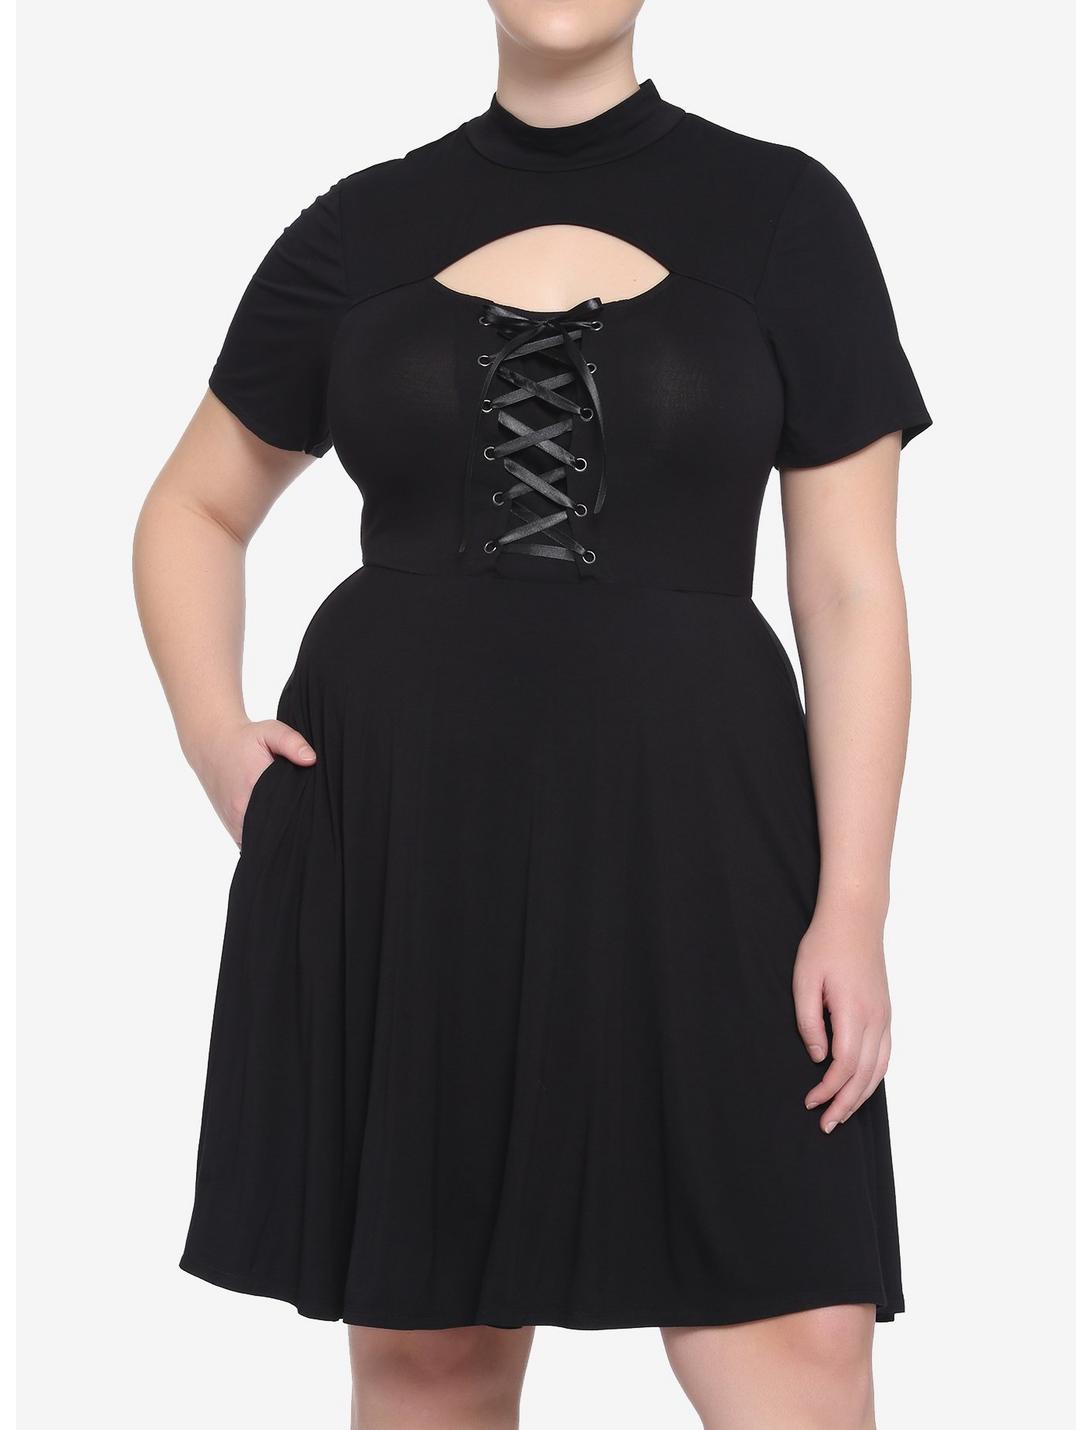 Black Cutout Lace-Up Dress Plus Size, BLACK, hi-res